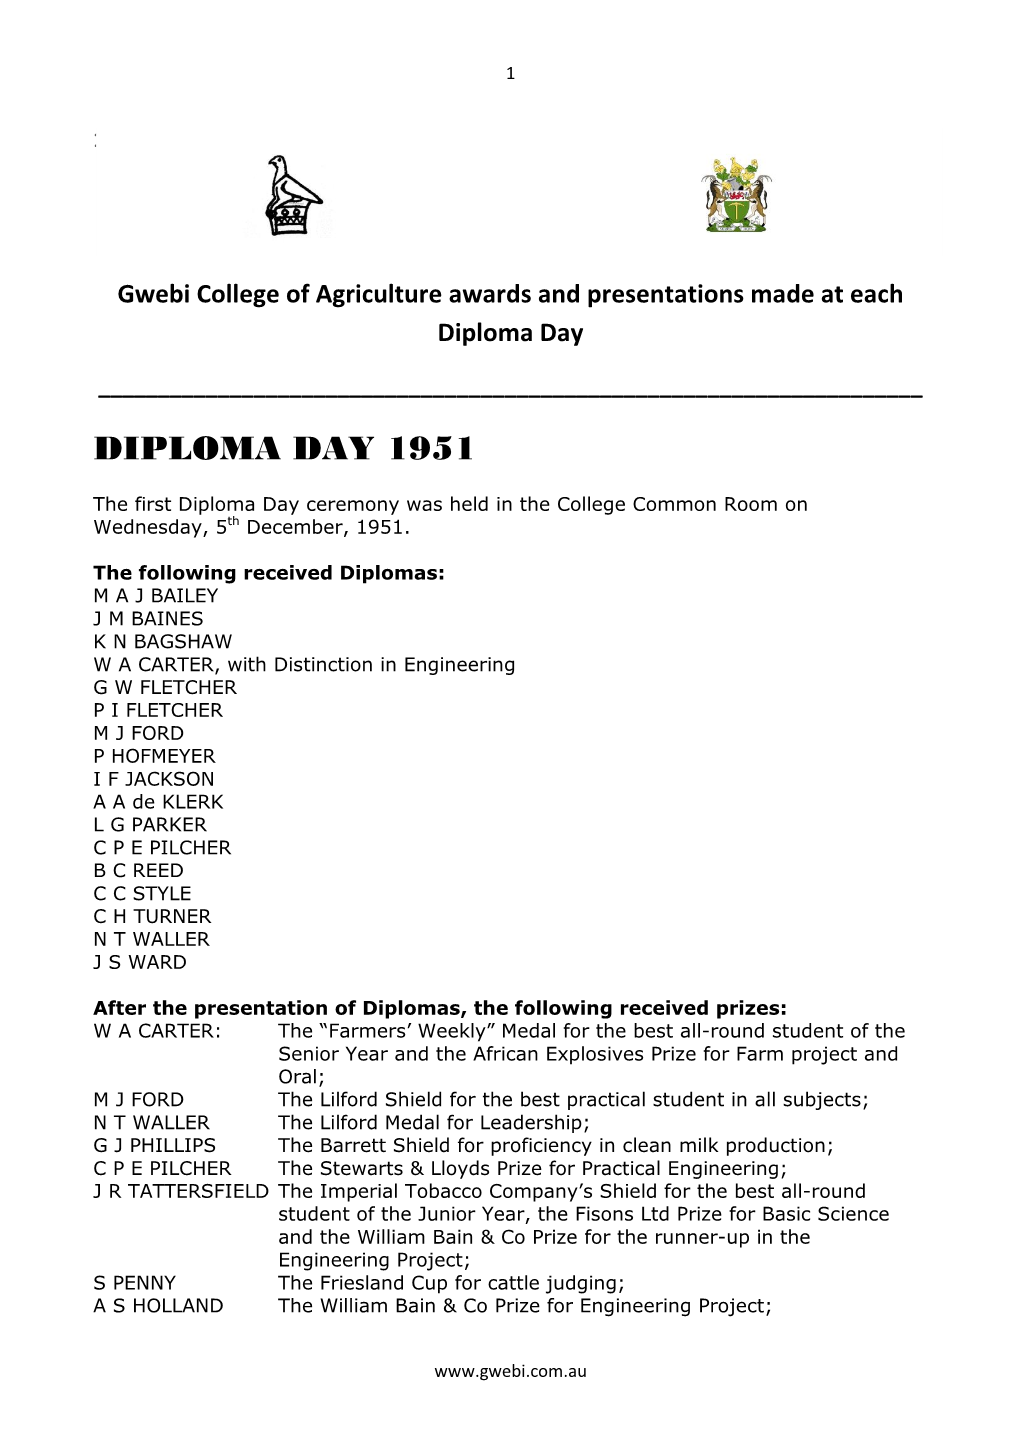 Diploma Day 1951